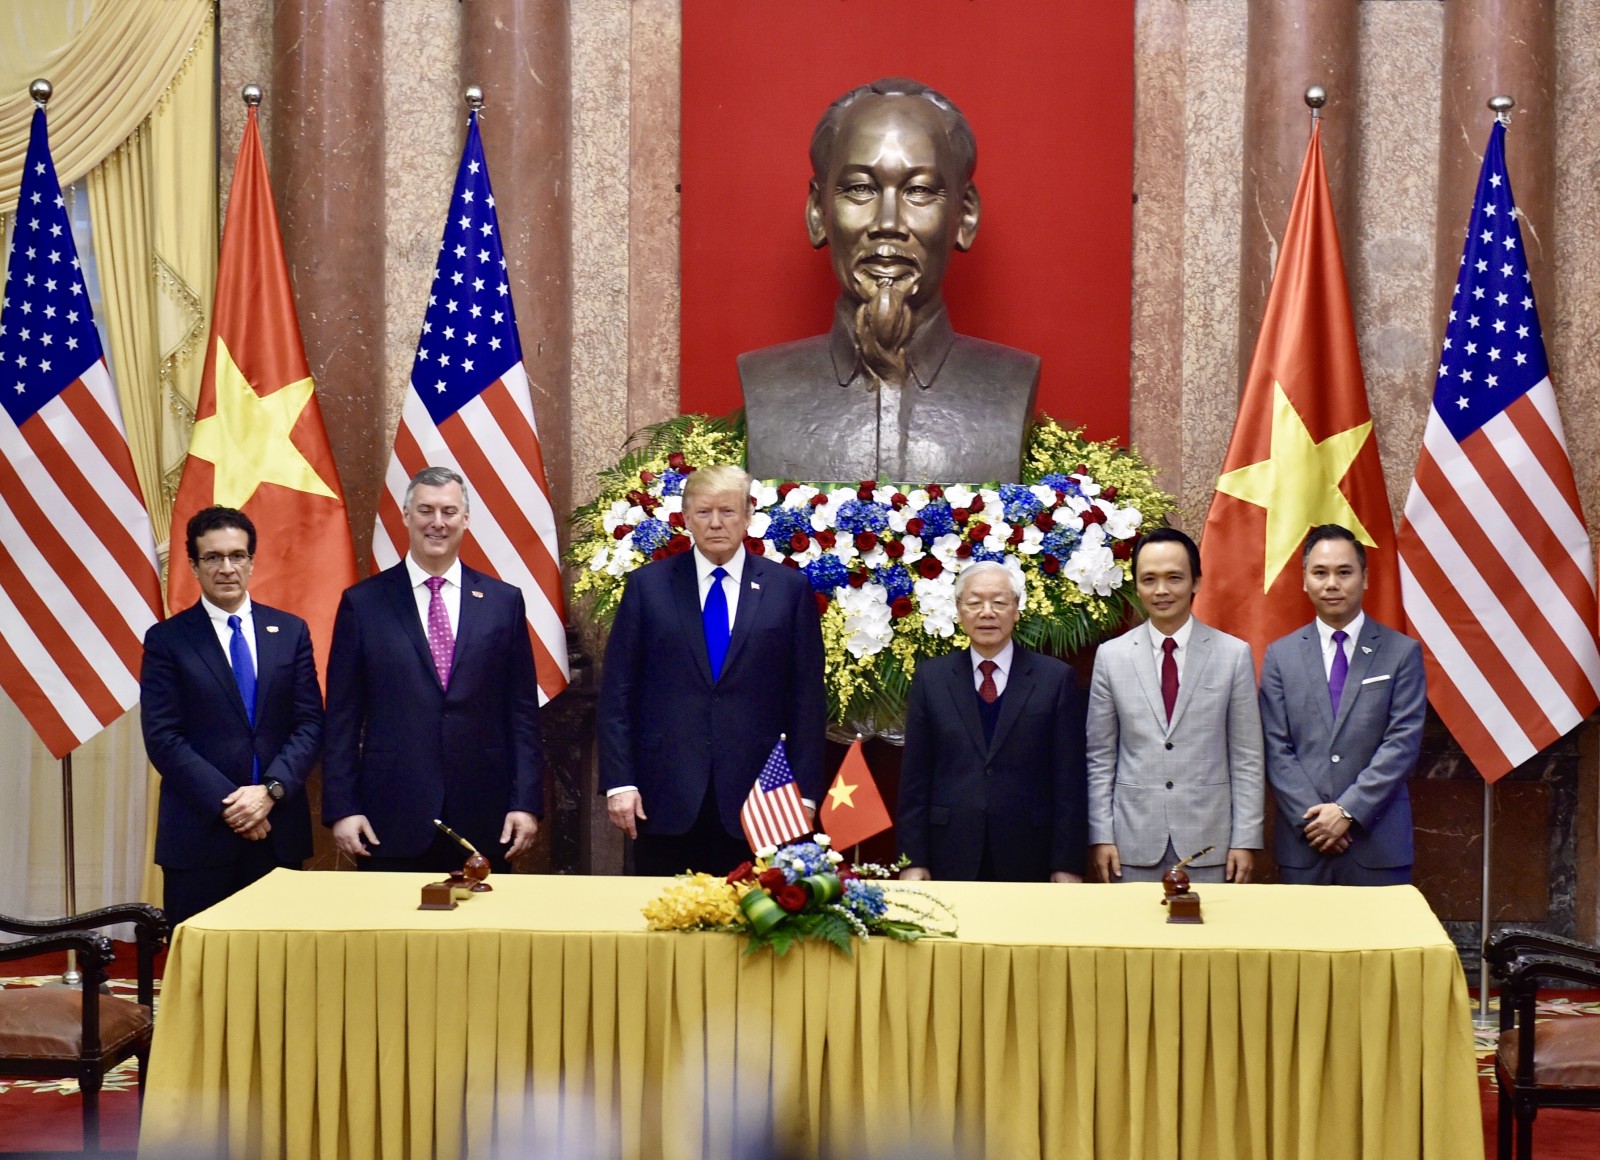 Lễ ký kết diễn ra tại Phủ Chủ tịch (Hà Nội) dưới sự chứng kiến Tổng Bí thư - Chủ tịch nước Việt Nam Nguyễn Phú Trọng và Tổng thống Mỹ Donald Trump, bên lề Hội nghị Thượng đỉnh Mỹ - Triều lần hai.